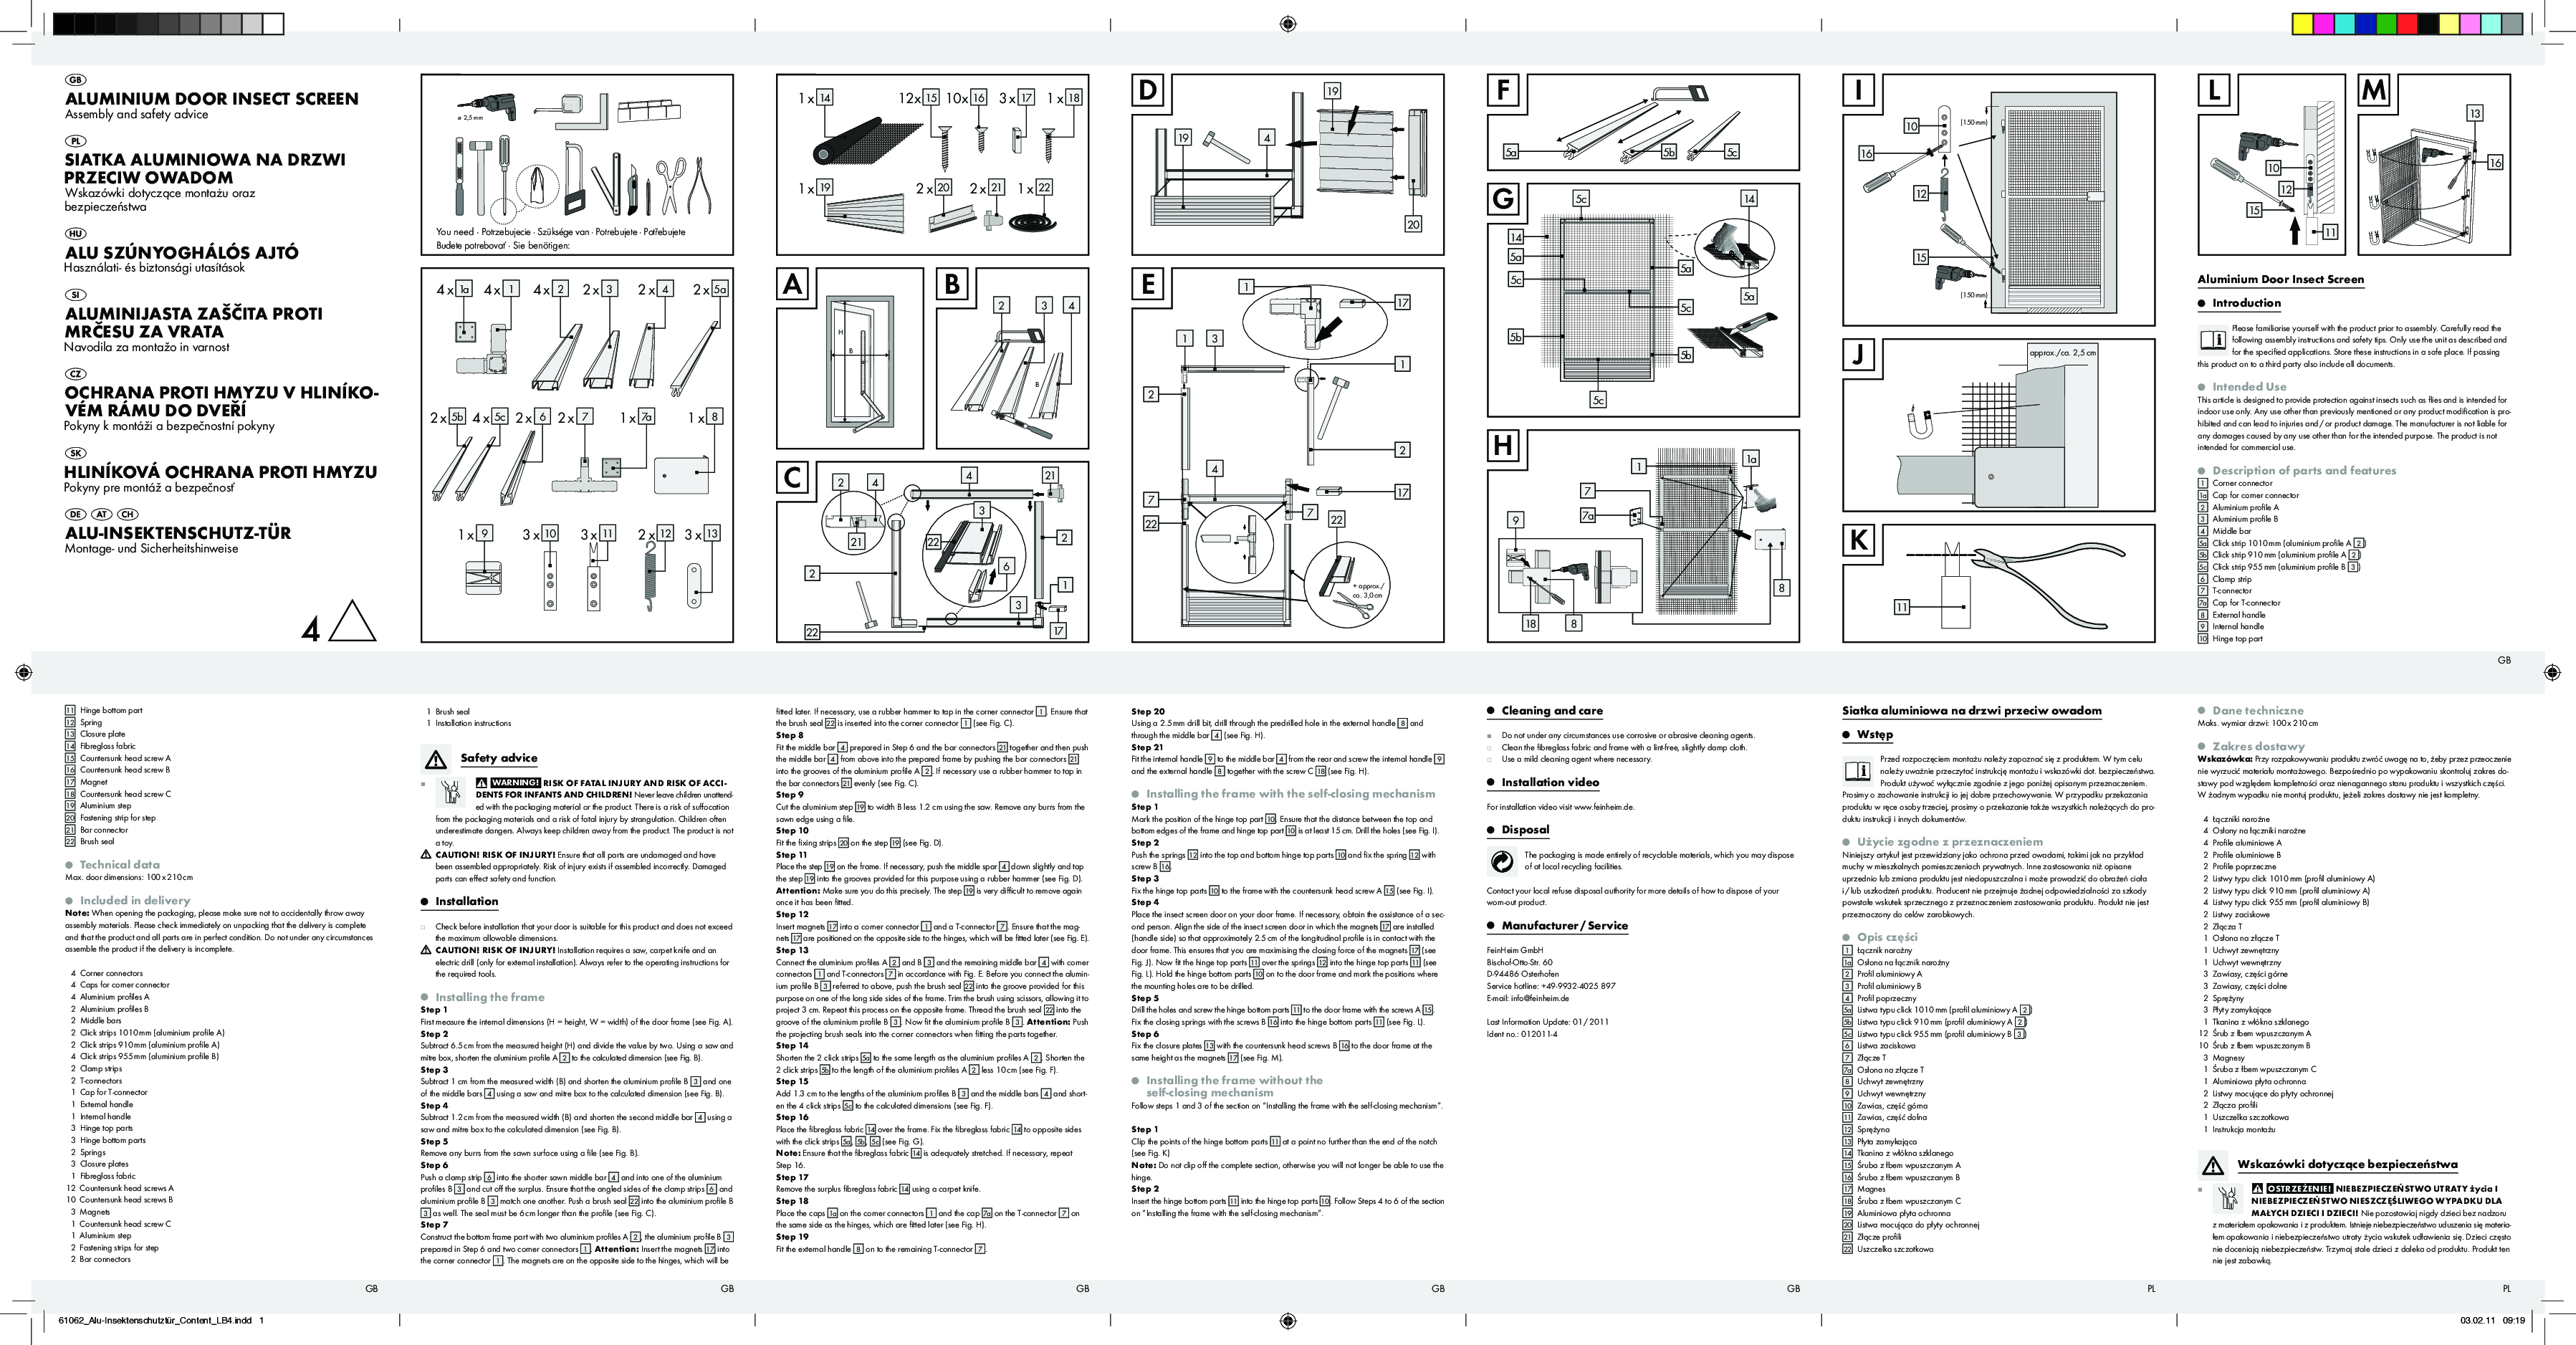 Powerfix Aluminium Door Insect Screen User Manual